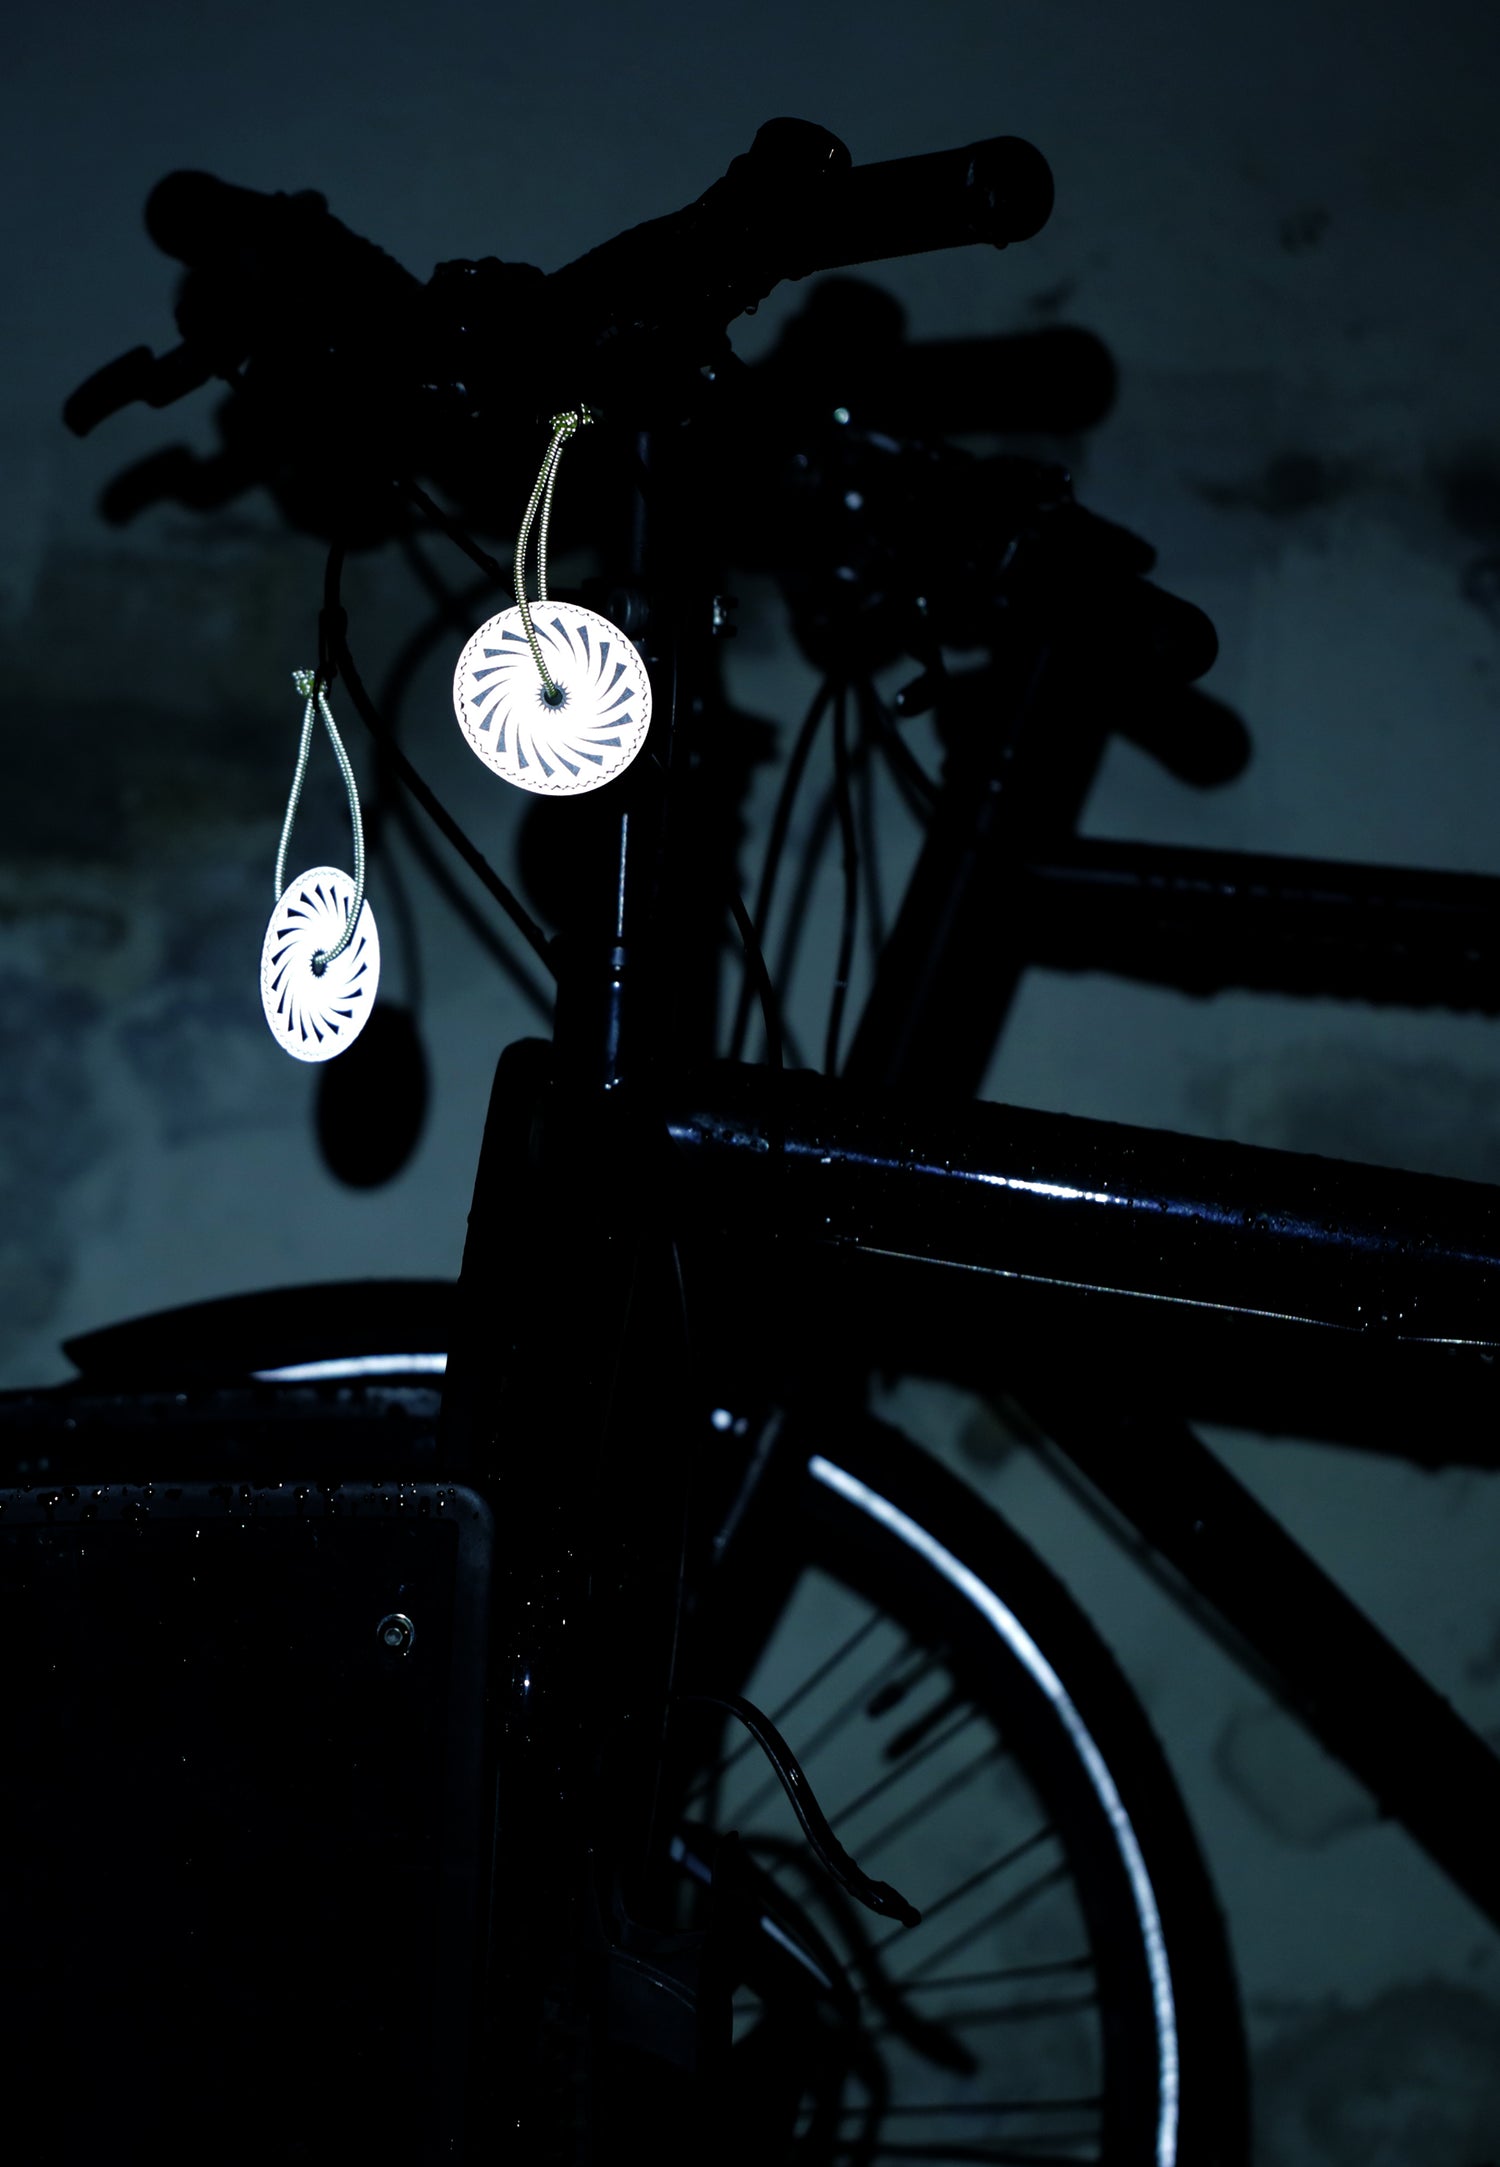 to Safe & Shine reflekser på cykel som lyser opi mørket